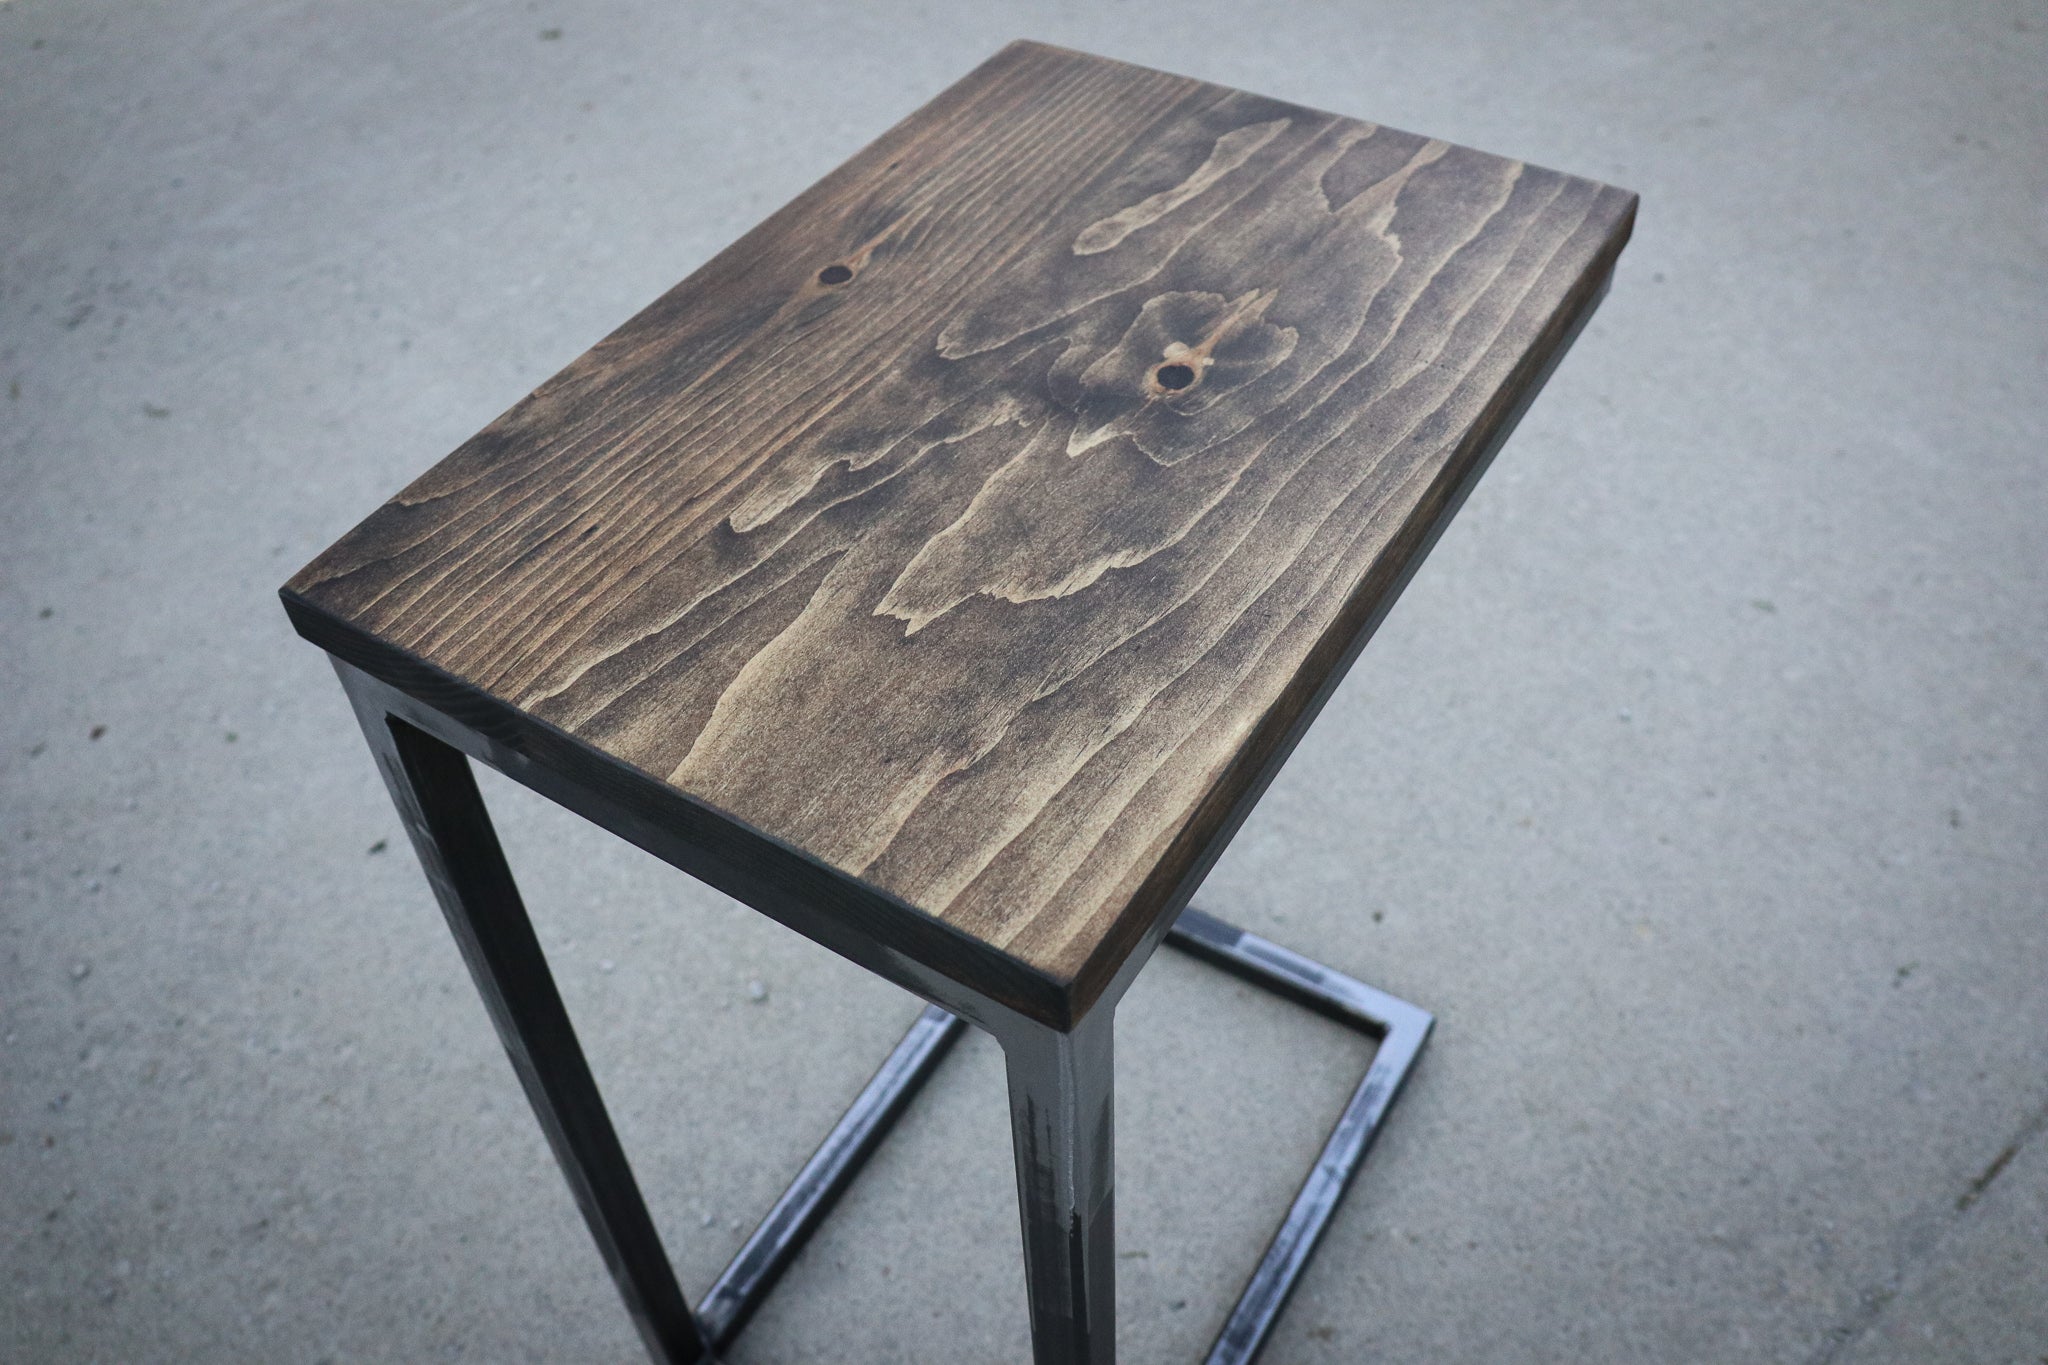 Pine Wood & Metal Industrial Side C Table